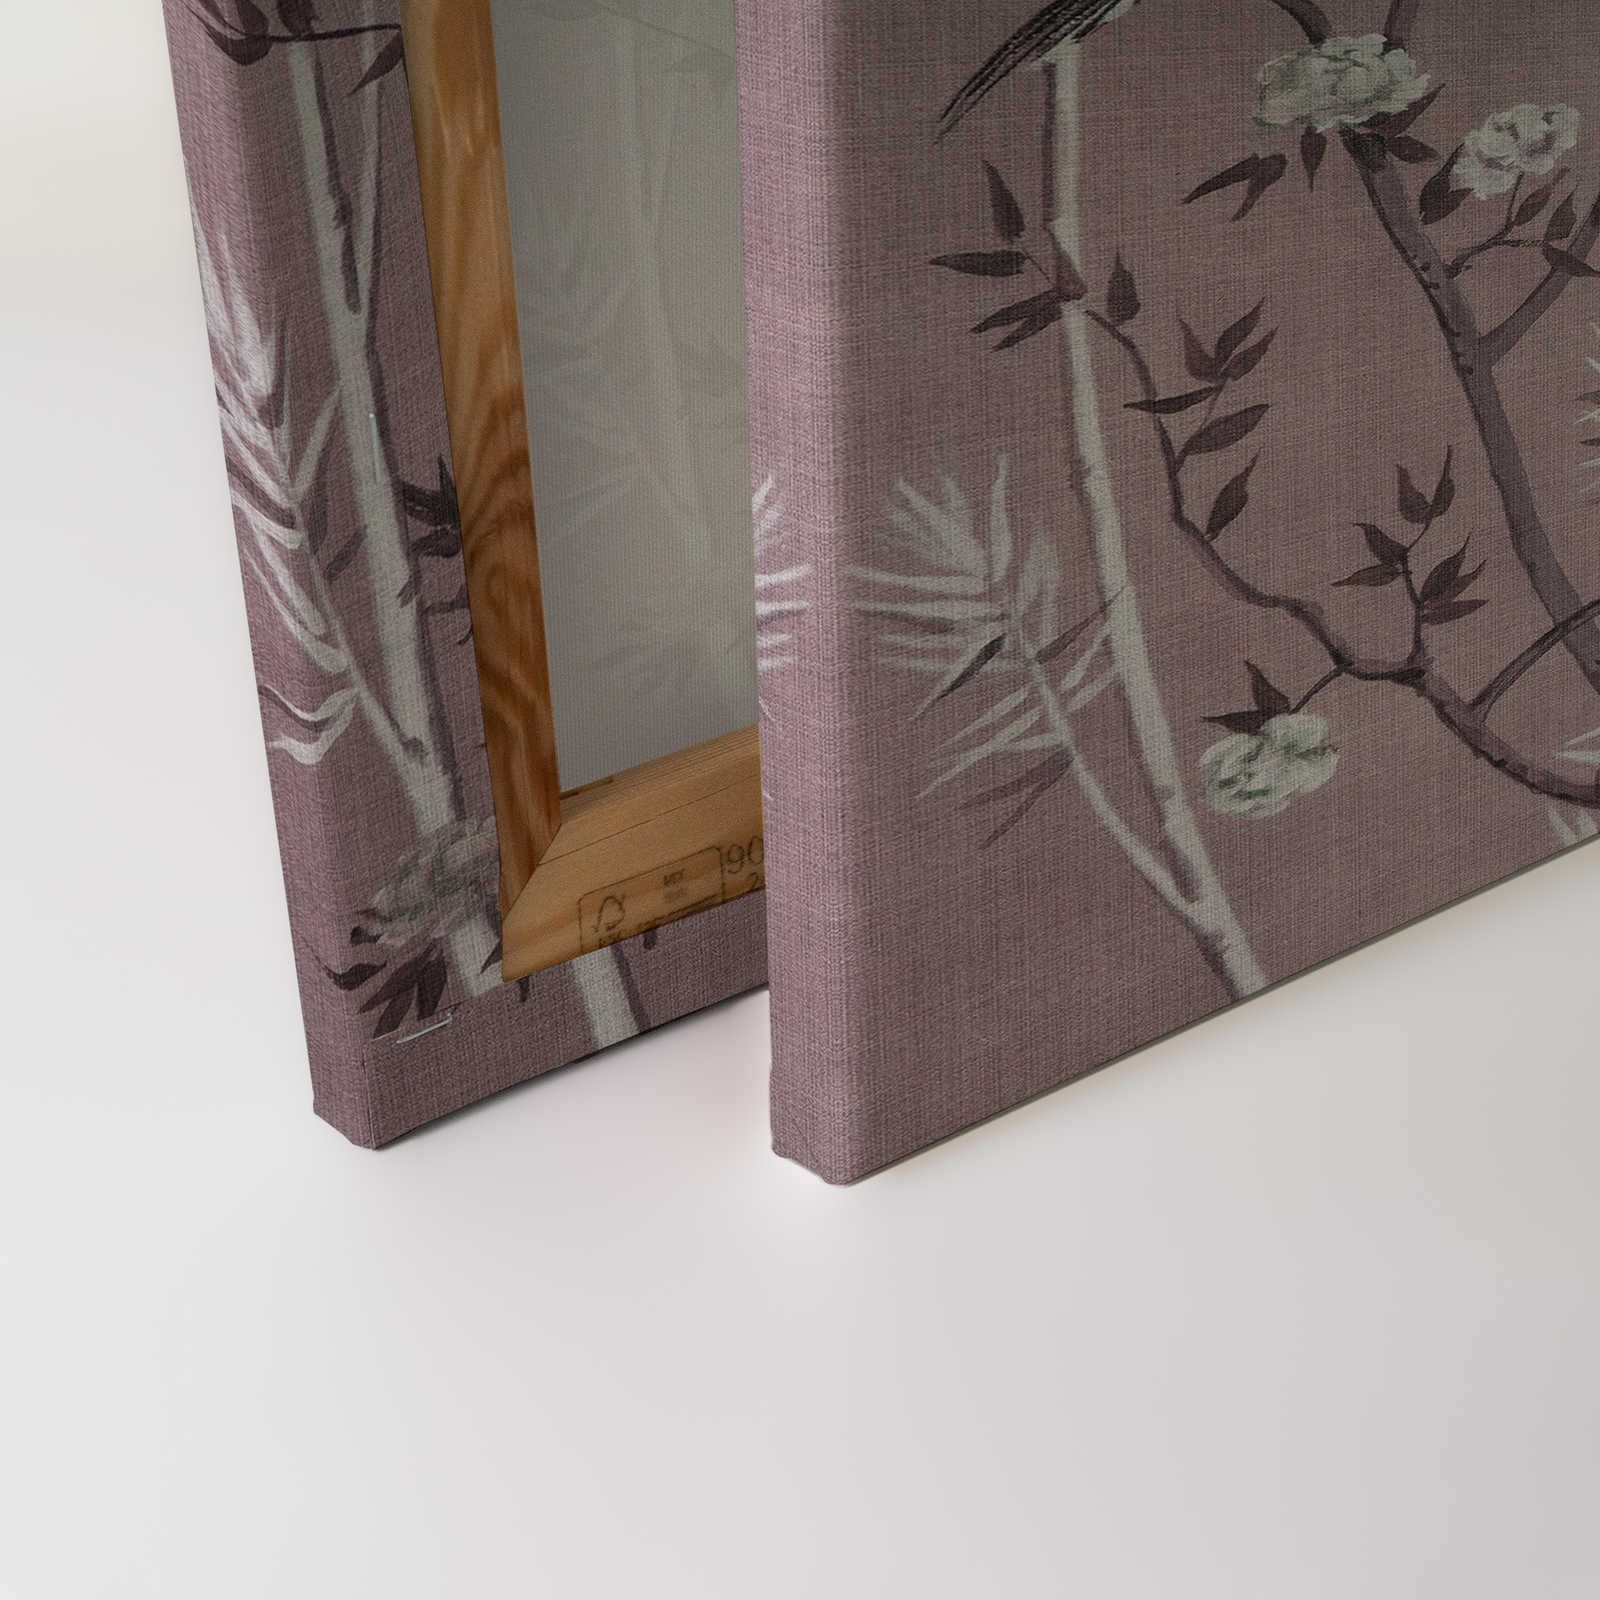             Tea Room 3 - Leinwandbild Vögel & Blüten Design in Rosa & Weiß – 0,90 m x 0,60 m
        